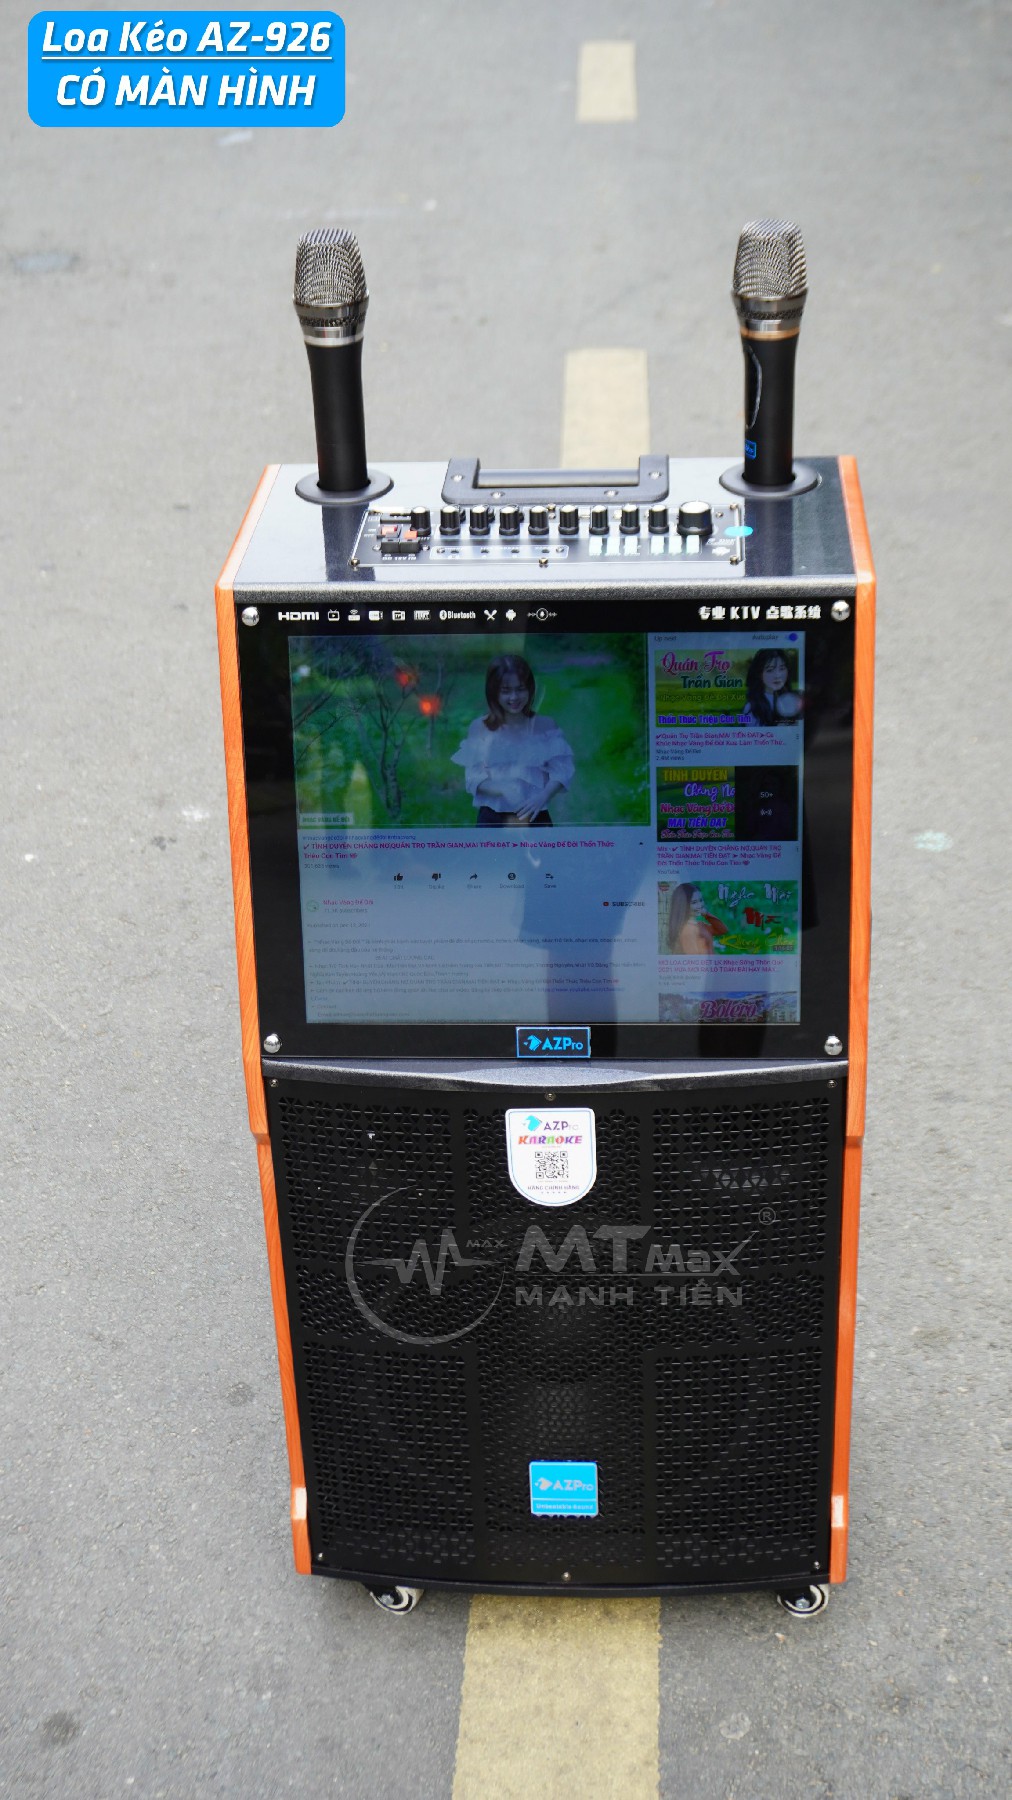 Loa kéo thông minh AZPro AZ-926 - Loa kéo di động 3 tấc, 3 đường tiếng, màn hình cảm ứng 17 inch - Sử dụng Android - Kết nối Wifi, Bluetooth, HDMI, USB, AUX, TF card - Chức năng livestream, hiệu ứng khán giả - Kèm 2 micro không dây UHF - Hàng chính hãng